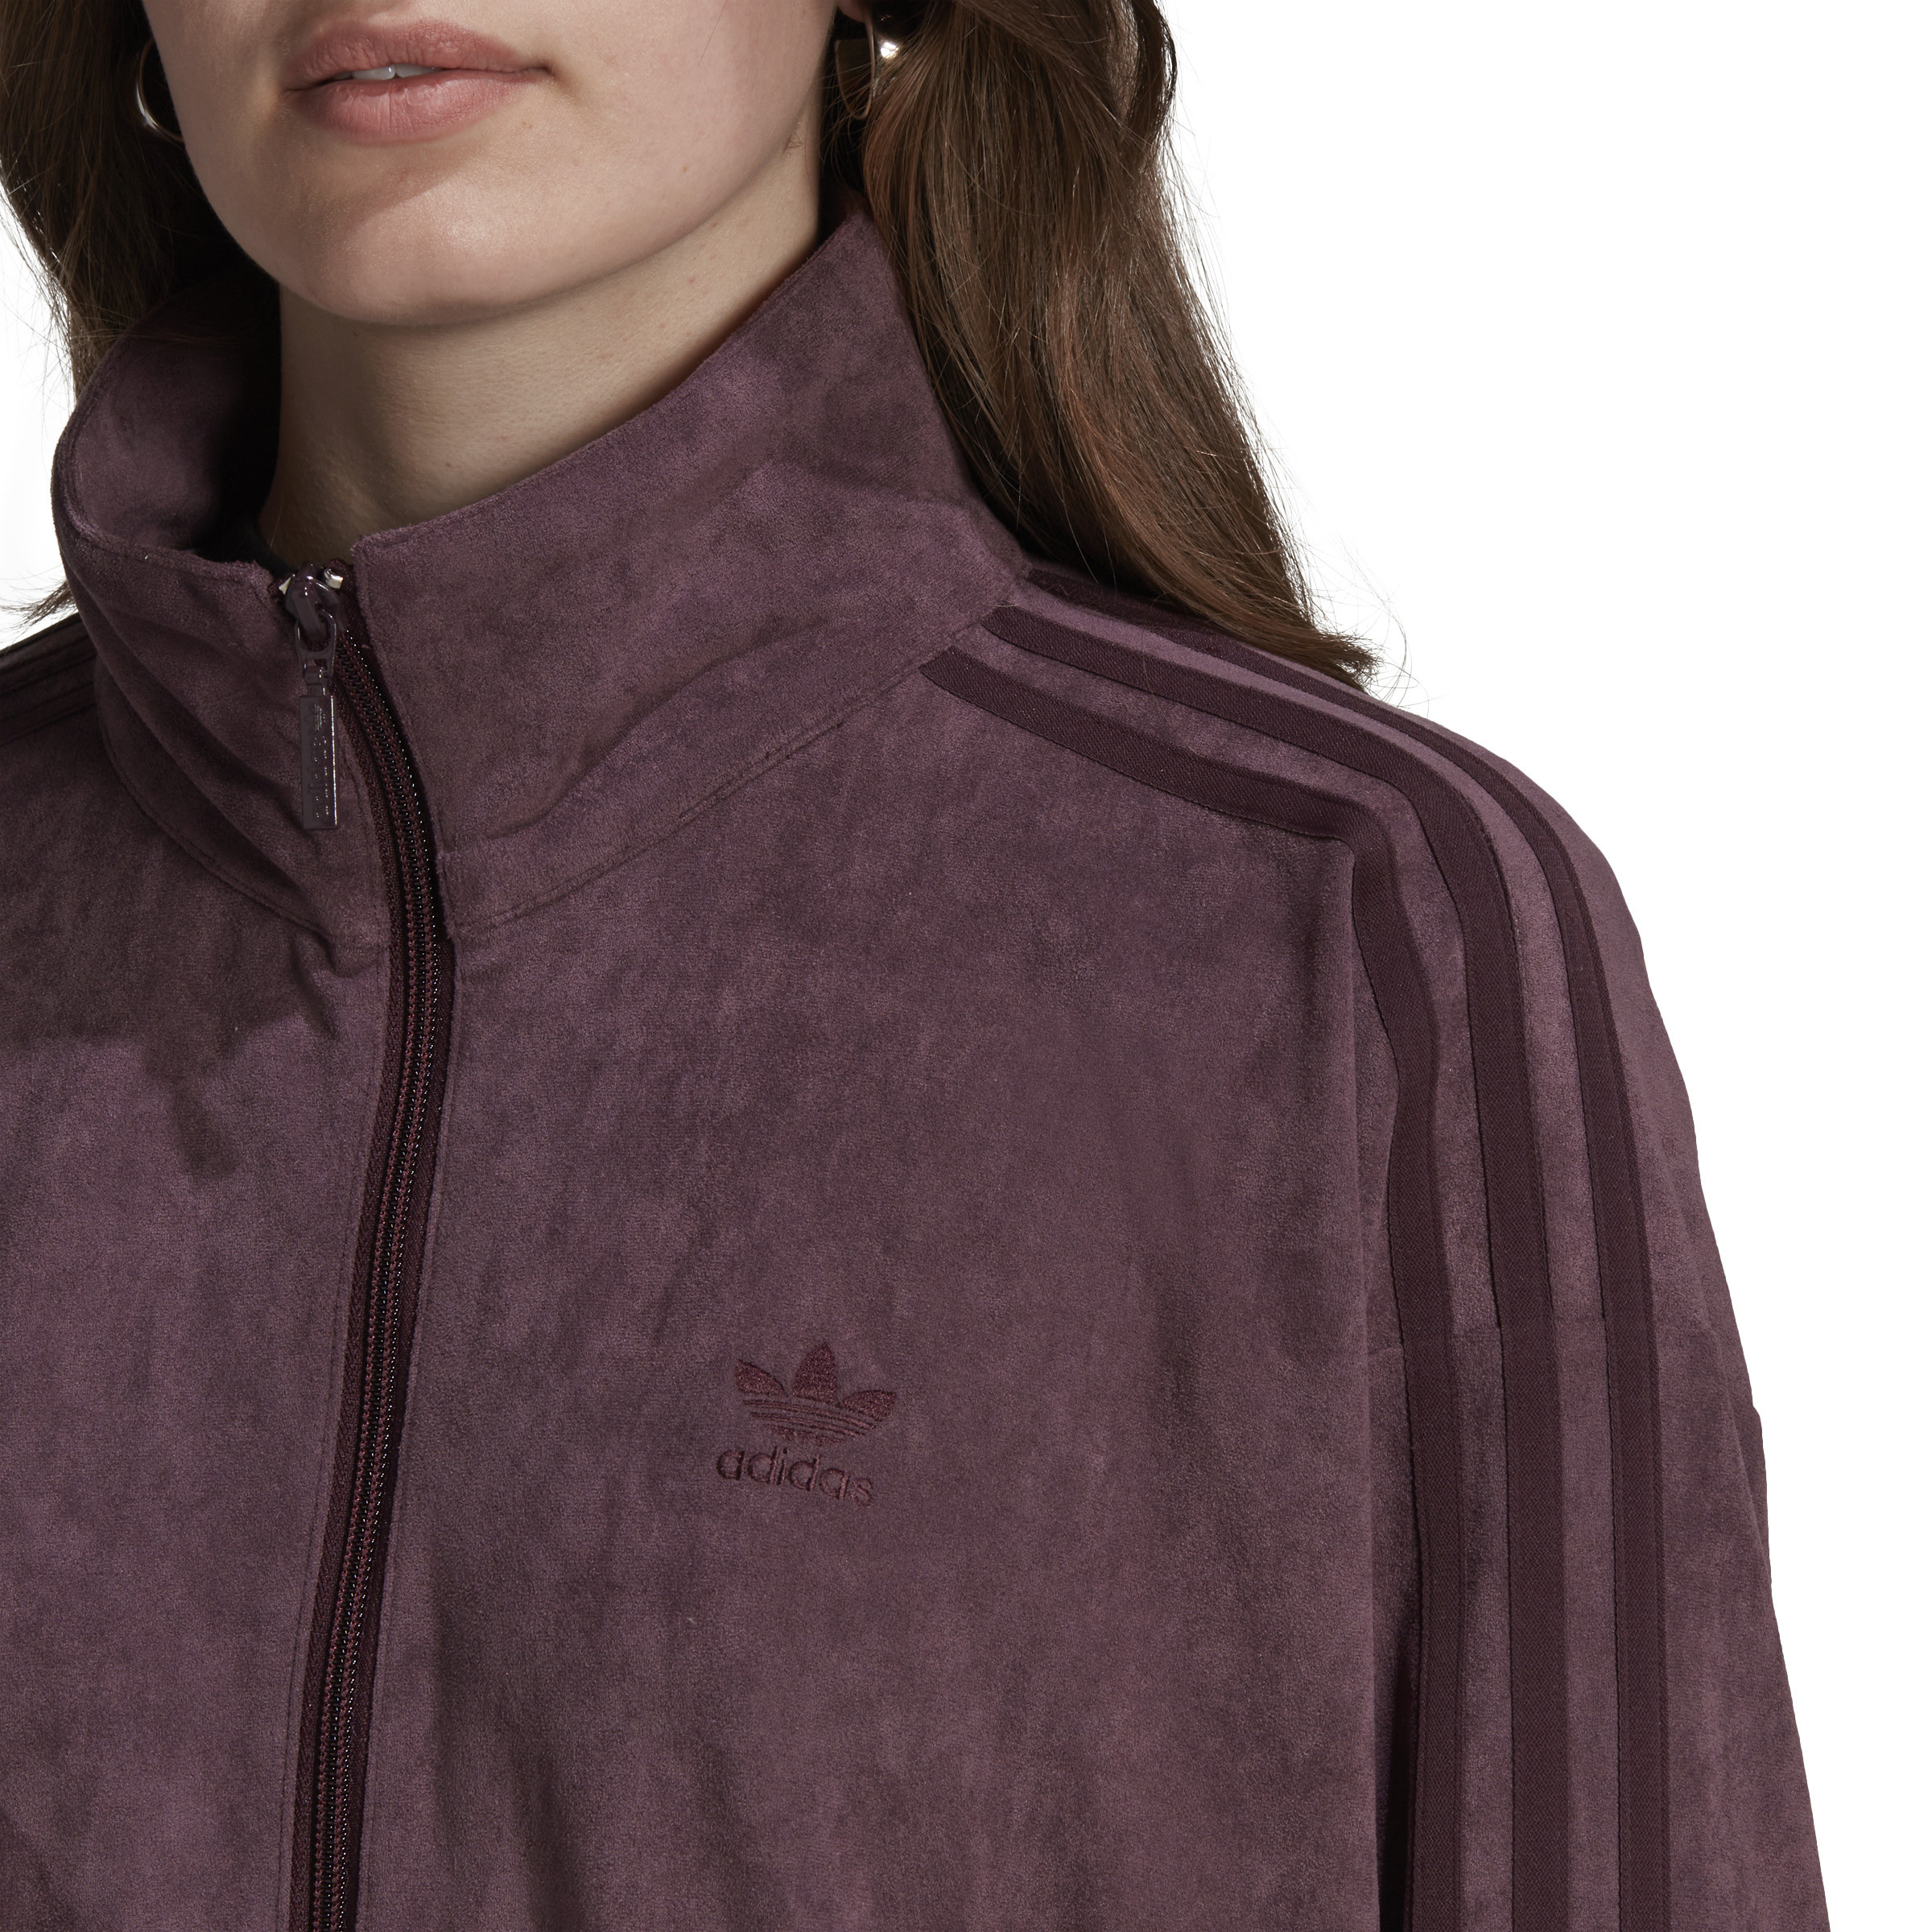 Adidas - Sweatshirt with logo, Dark Pink, large image number 4